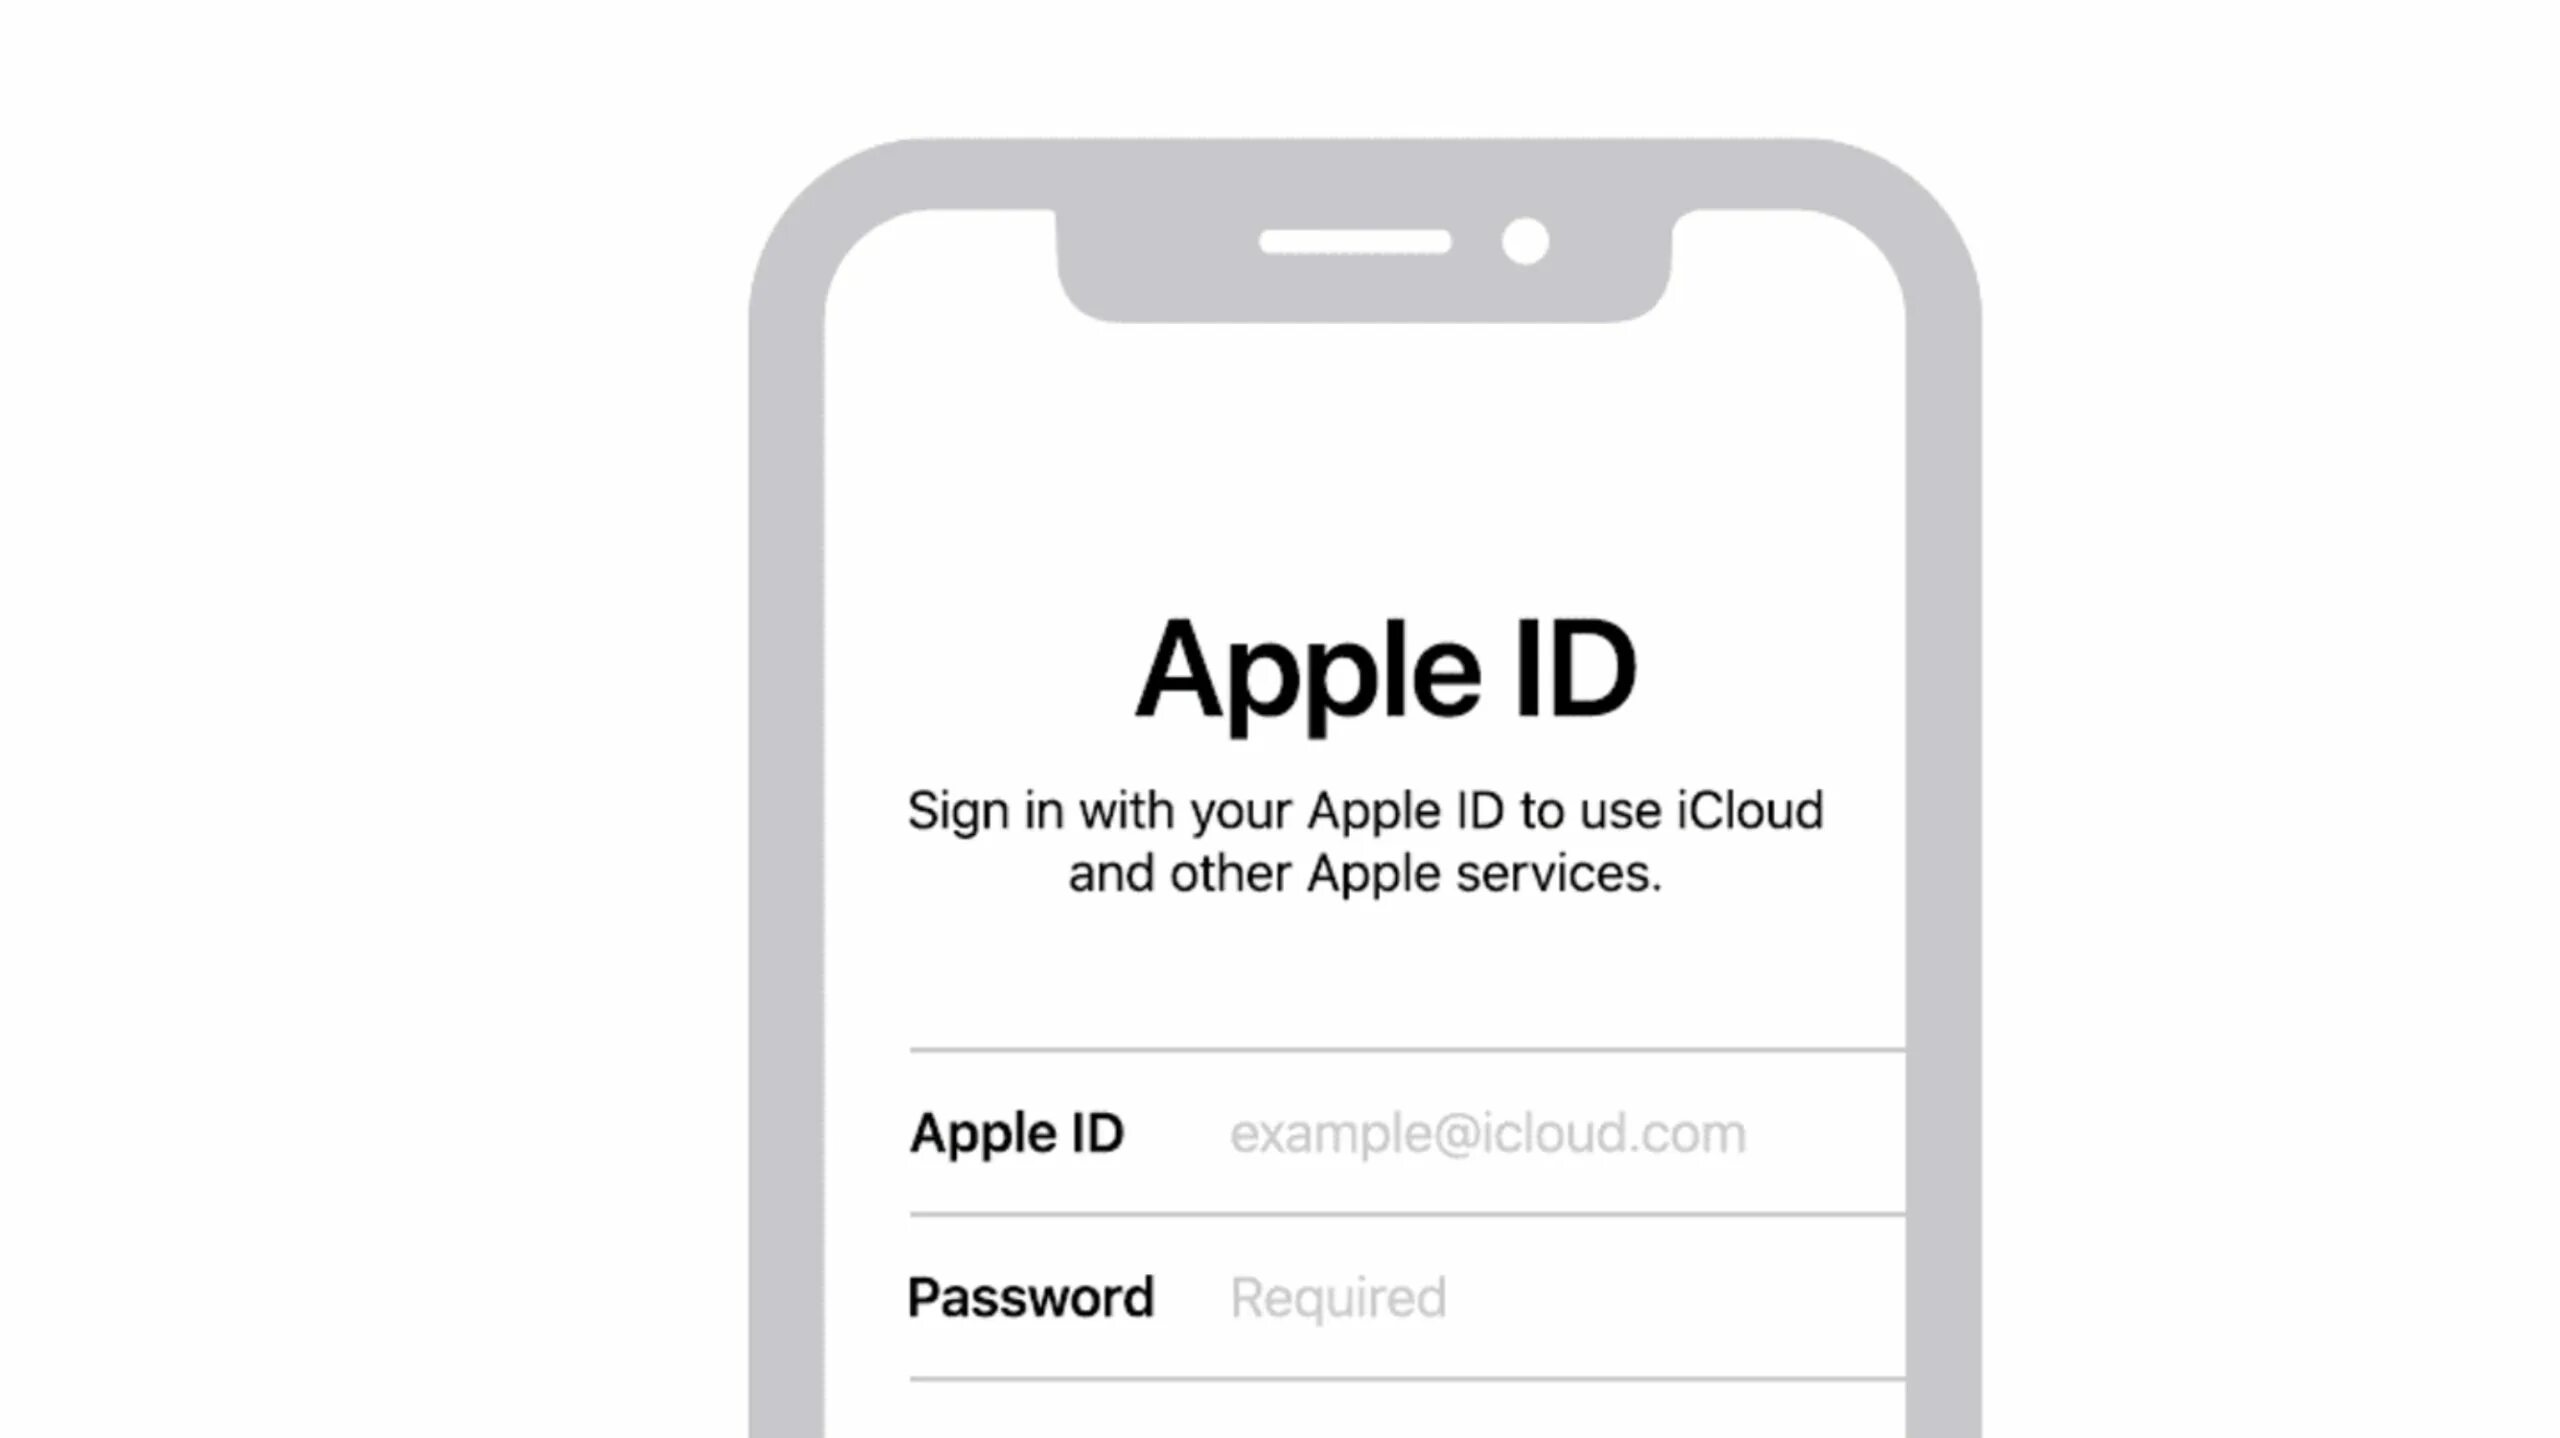 Appel id. Подарочная карта Apple ID. Apple Store sign. Подарочная карта айклауд. Карта ICLOUD подарочная купить.